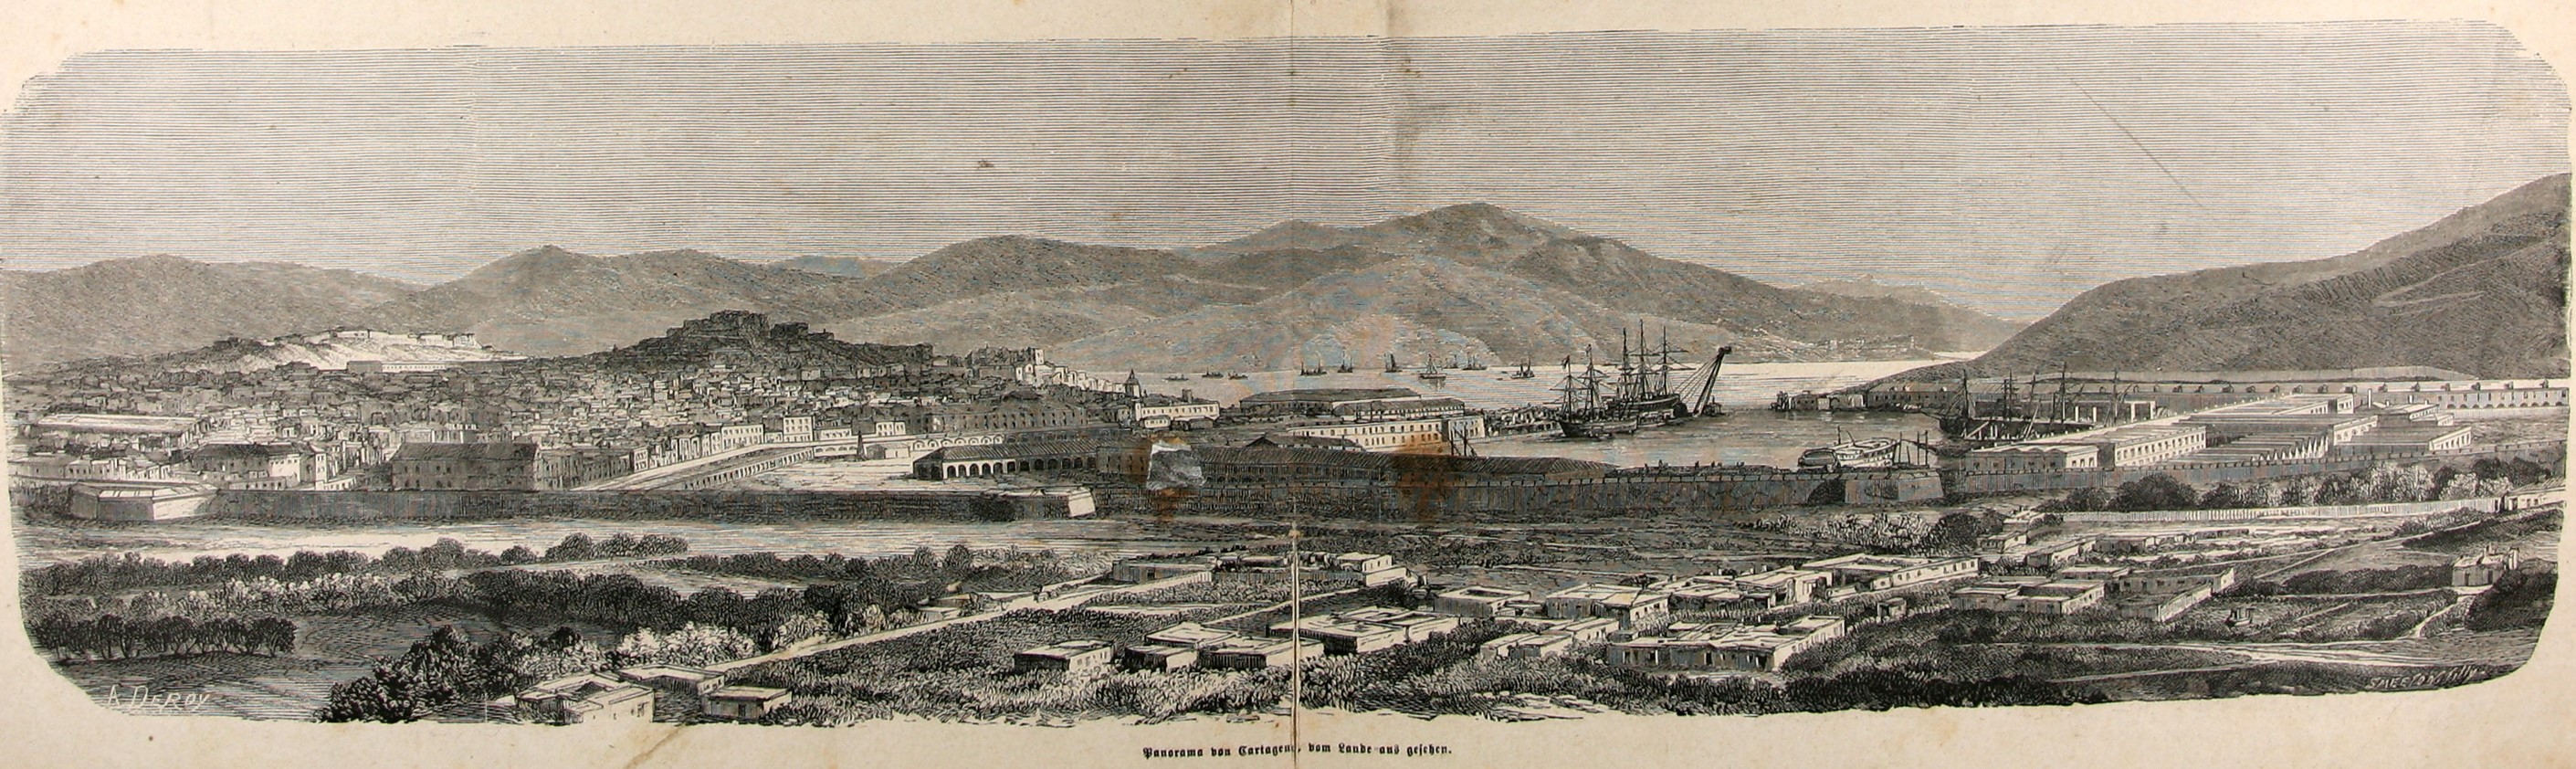 panoramica_1873